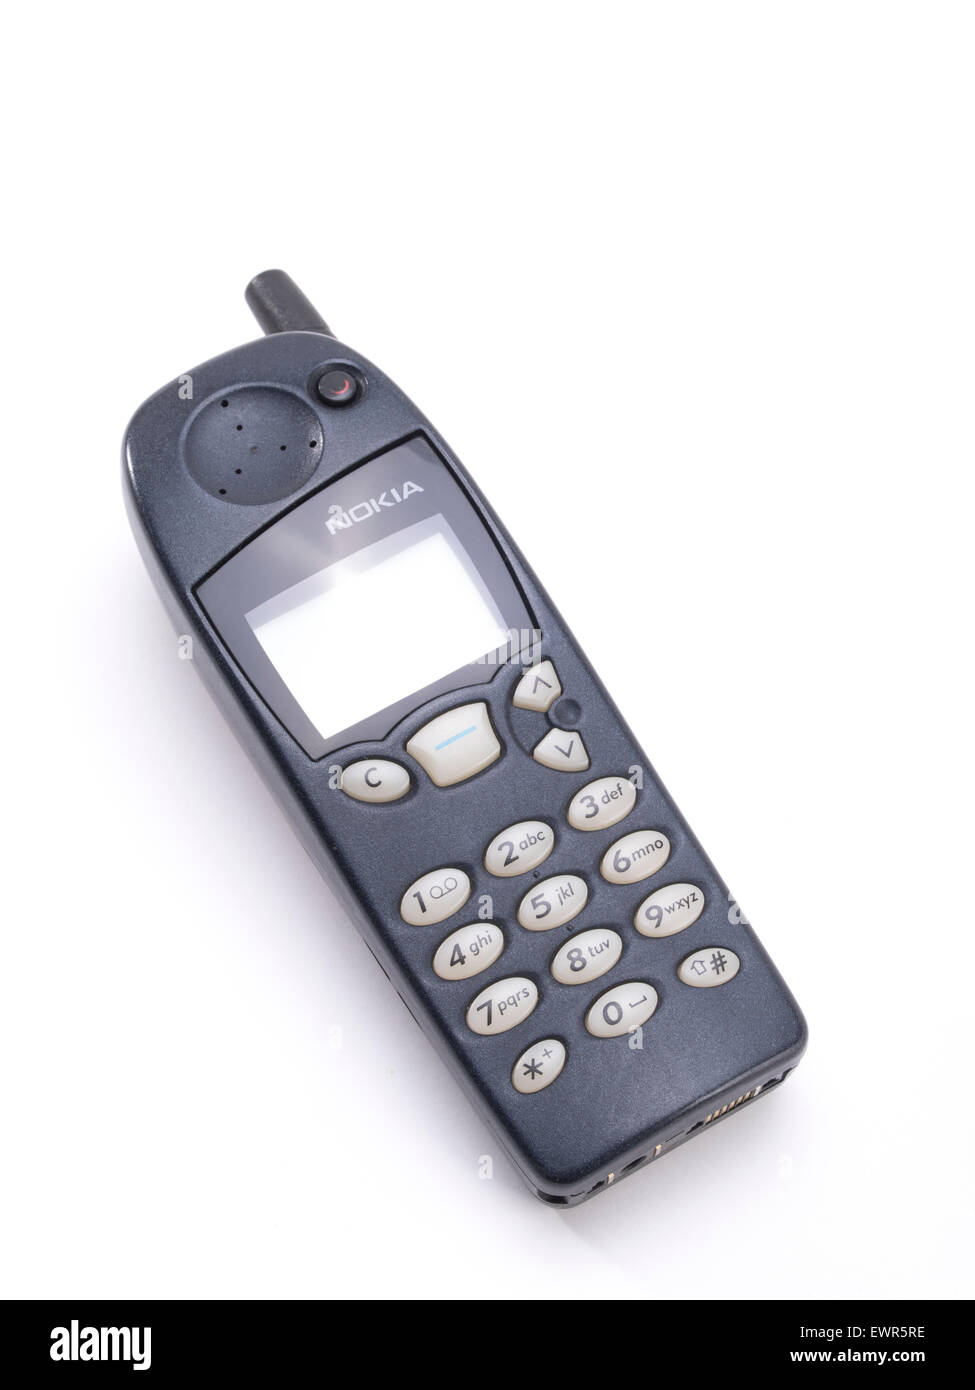 Nokia 5110, il telefono cellulare GSM, introdotto da Nokia nel marzo 1998 Foto Stock